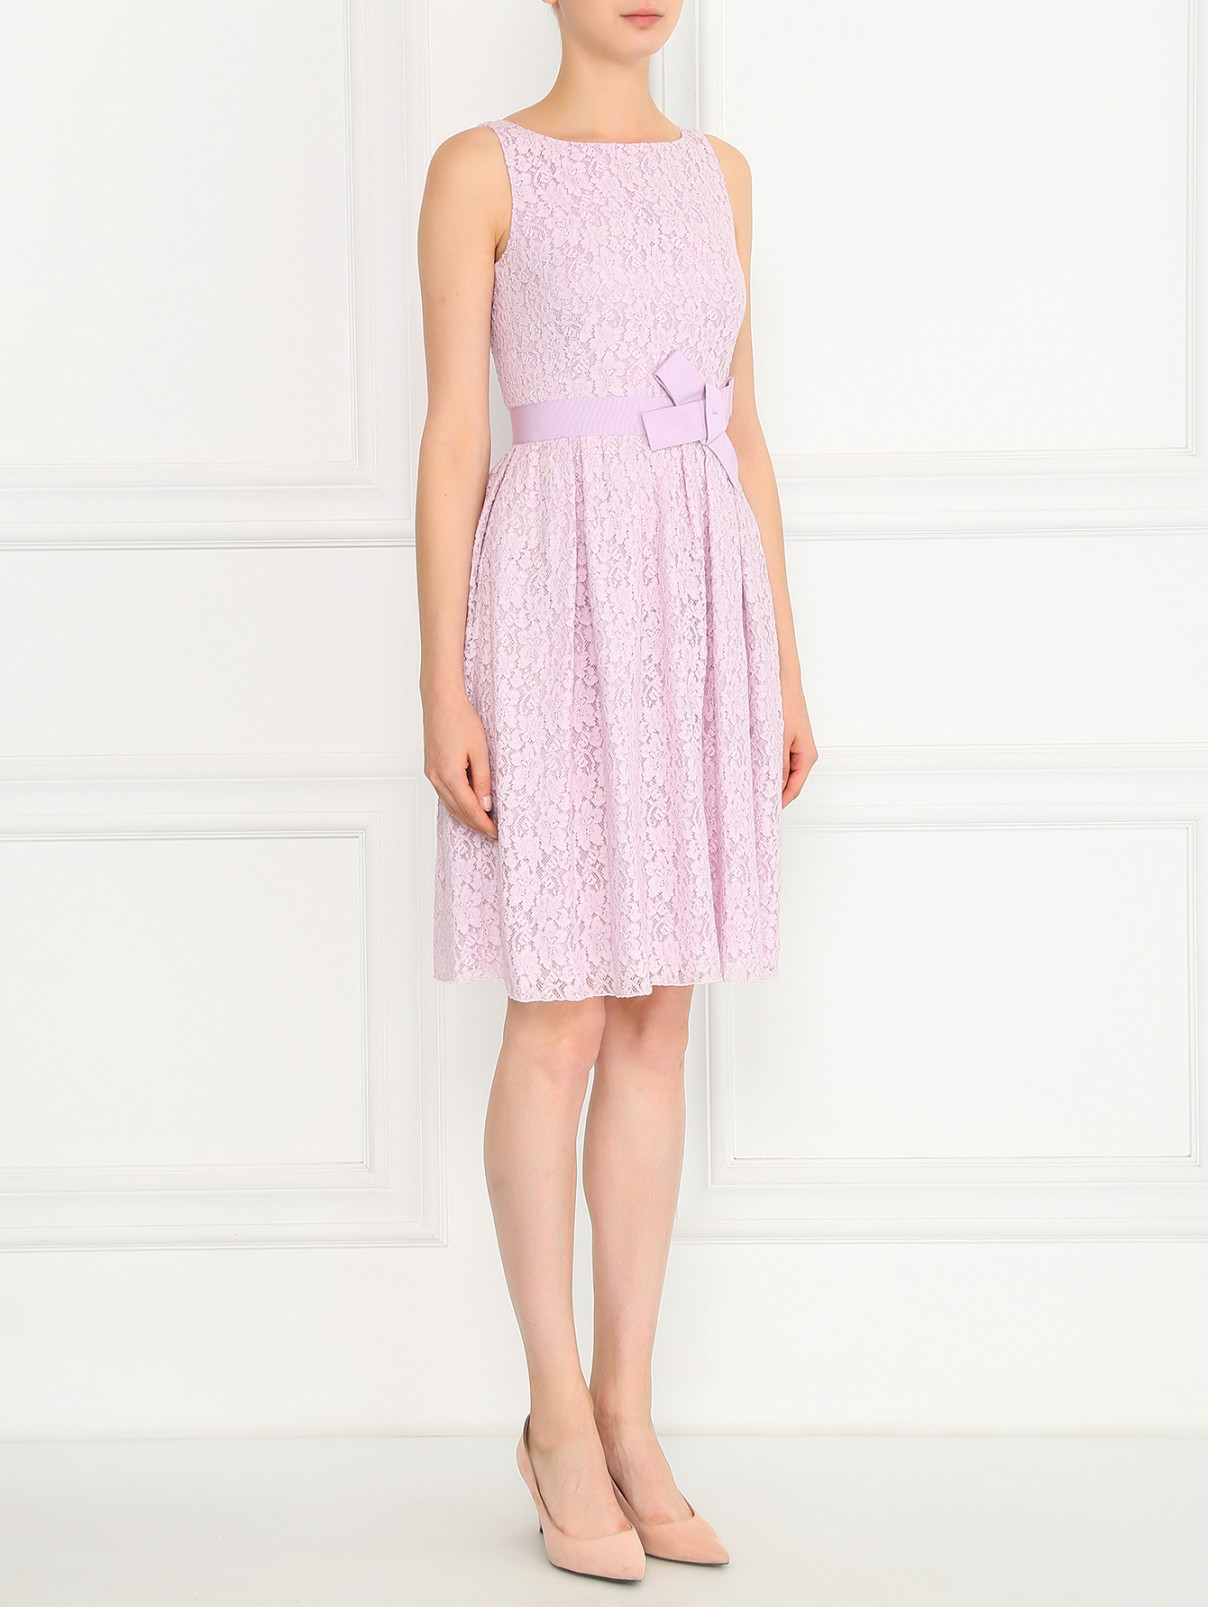 Платье-футляр из кружева Paule Ka  –  Модель Общий вид  – Цвет:  Фиолетовый